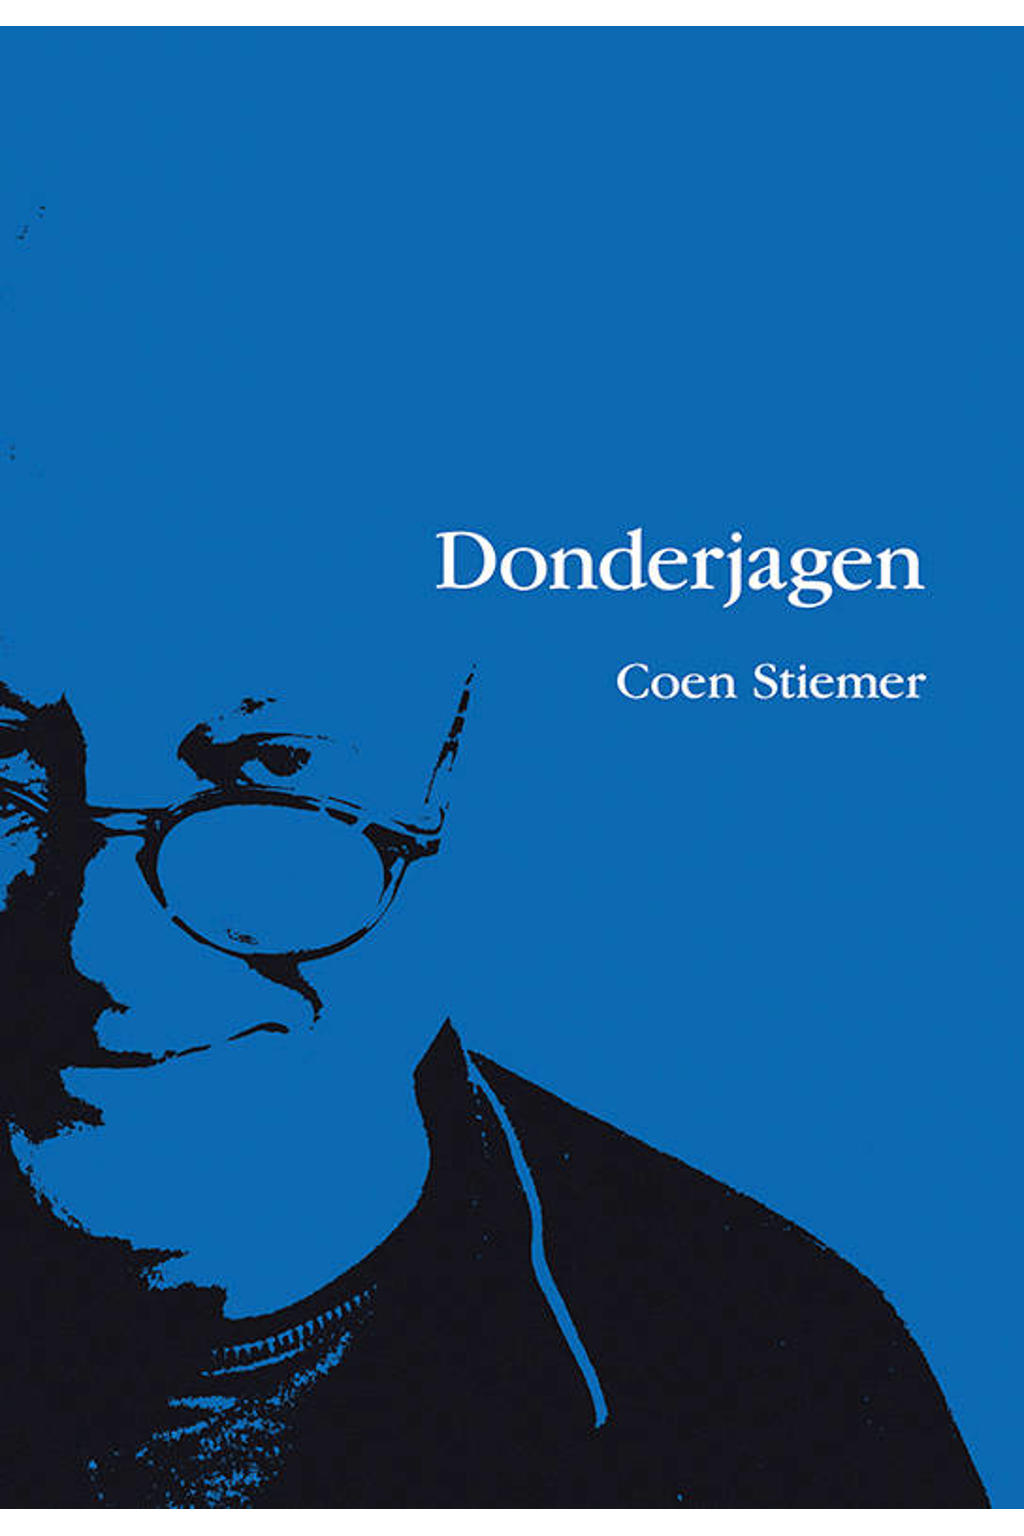 Donderjagen - Coen Stiemer